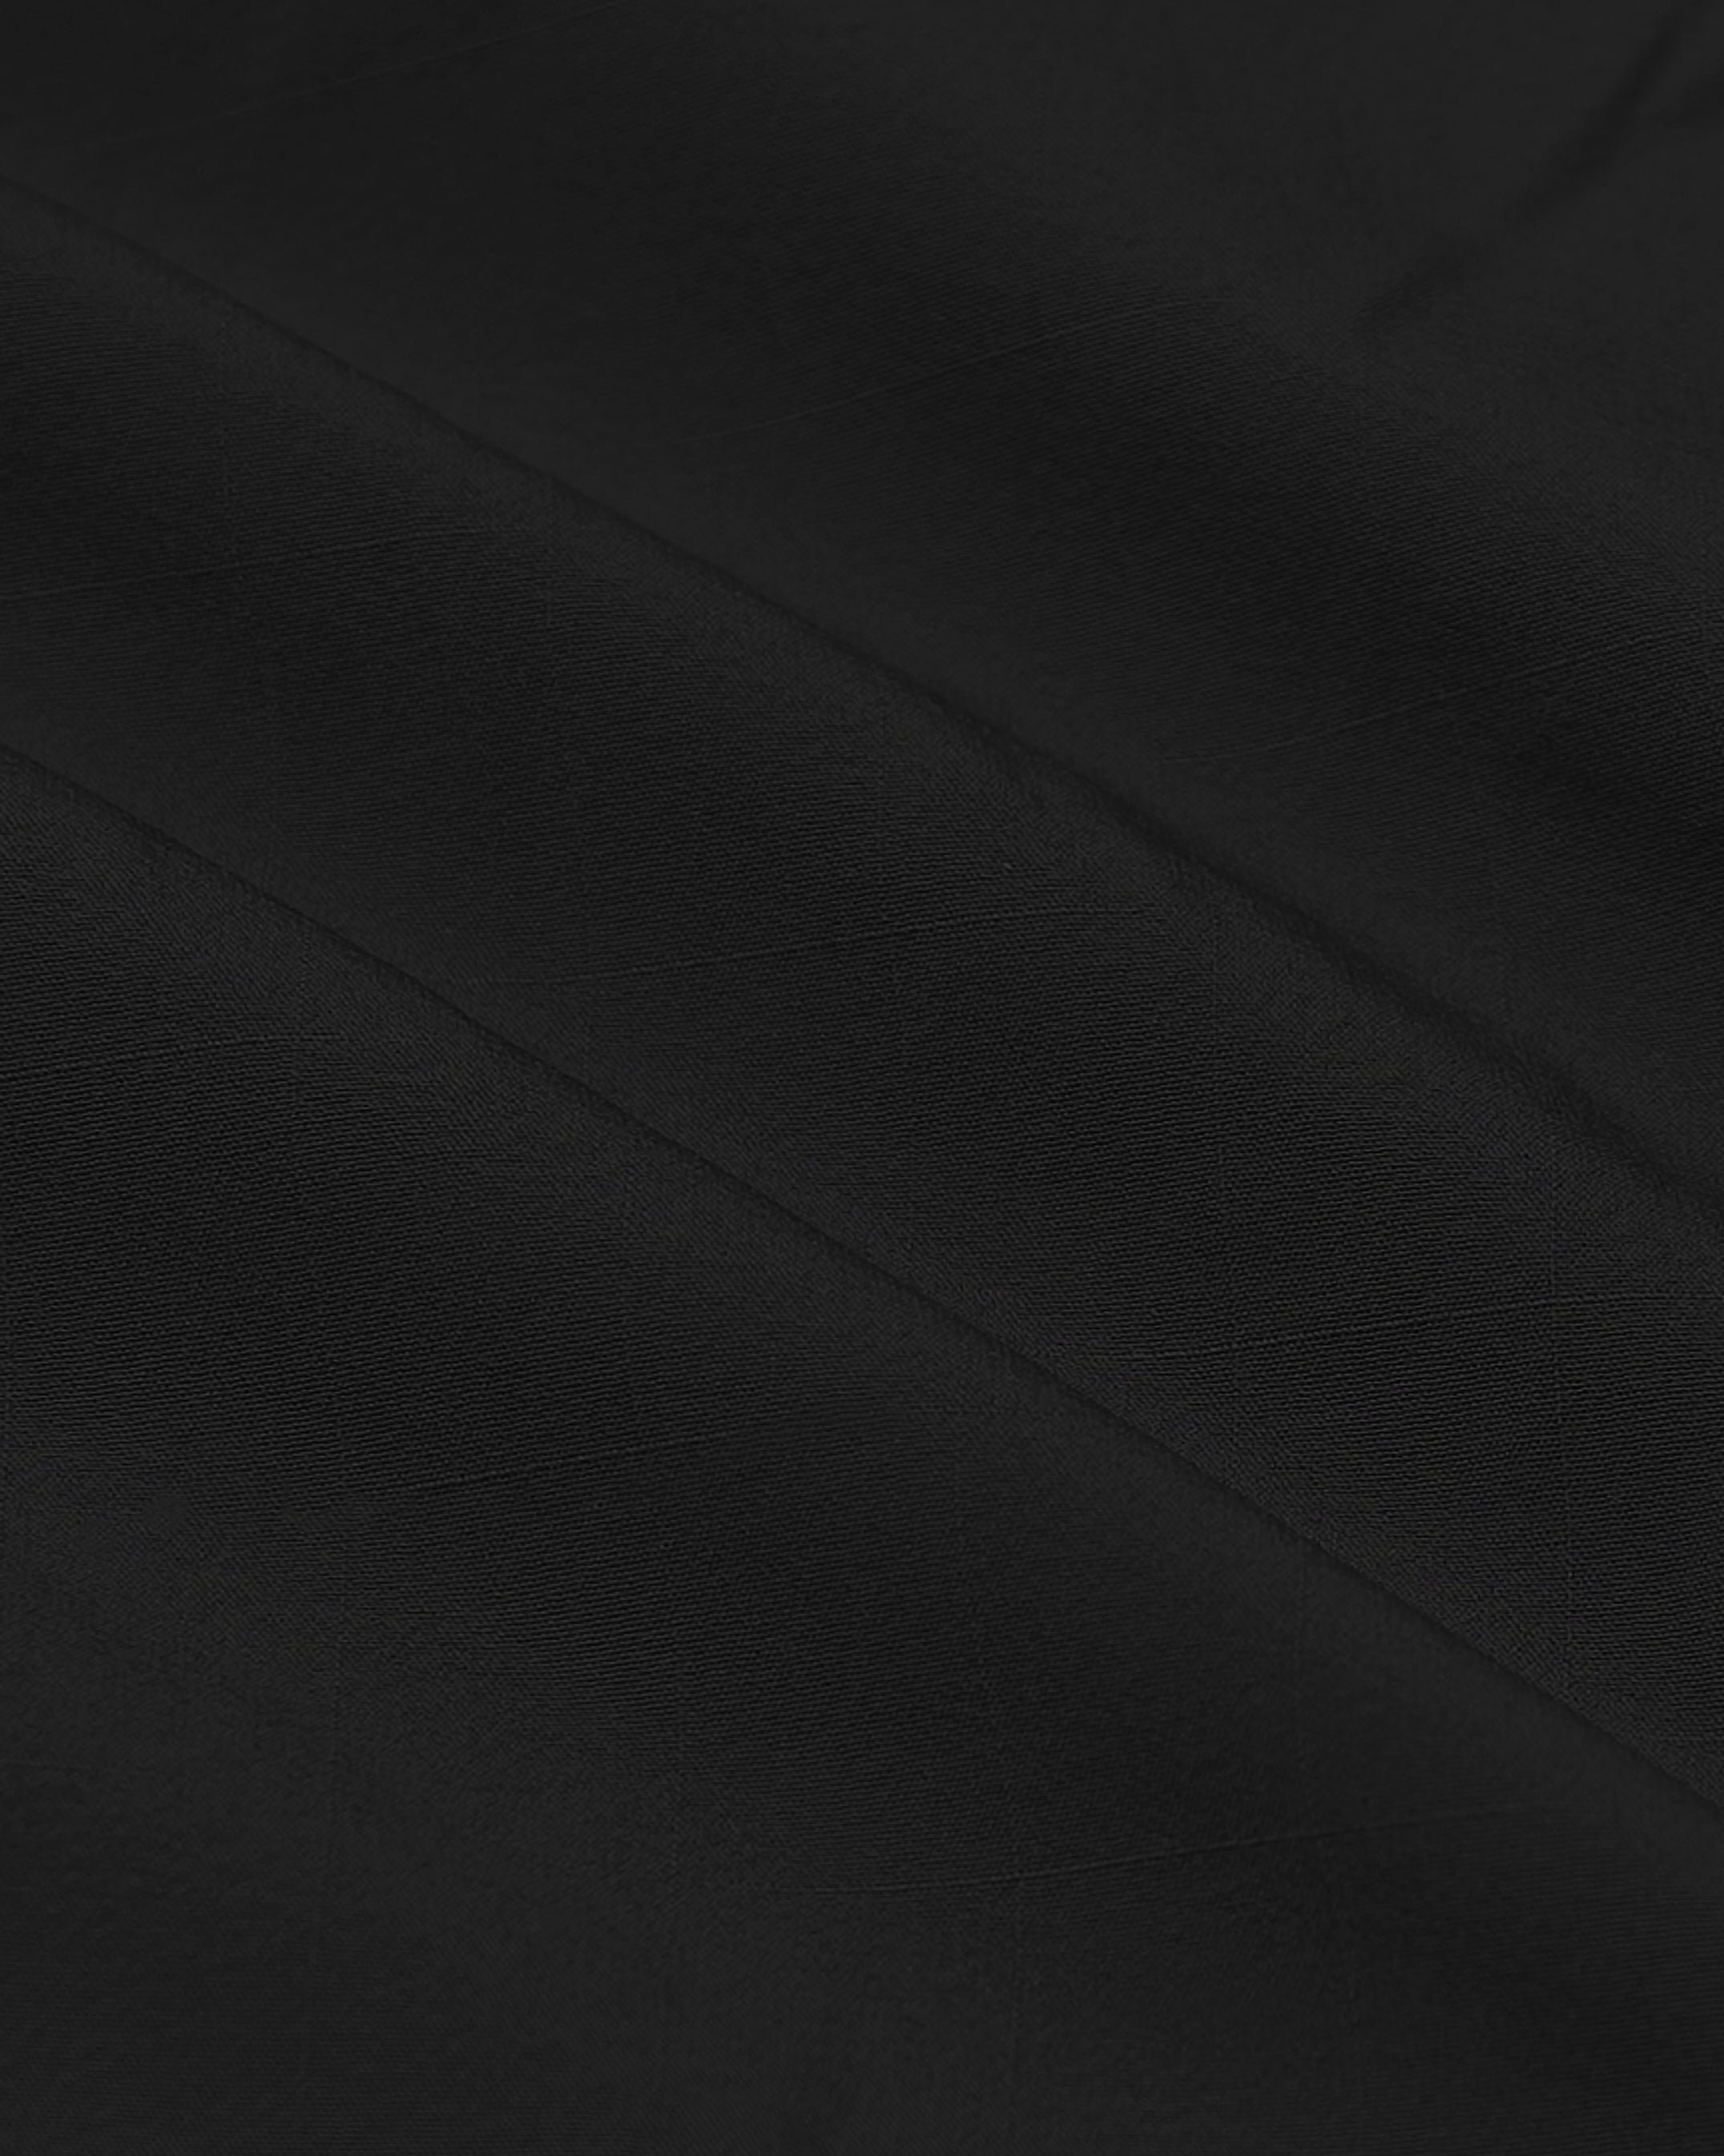 Black Performance Lightweight Dress Shirt